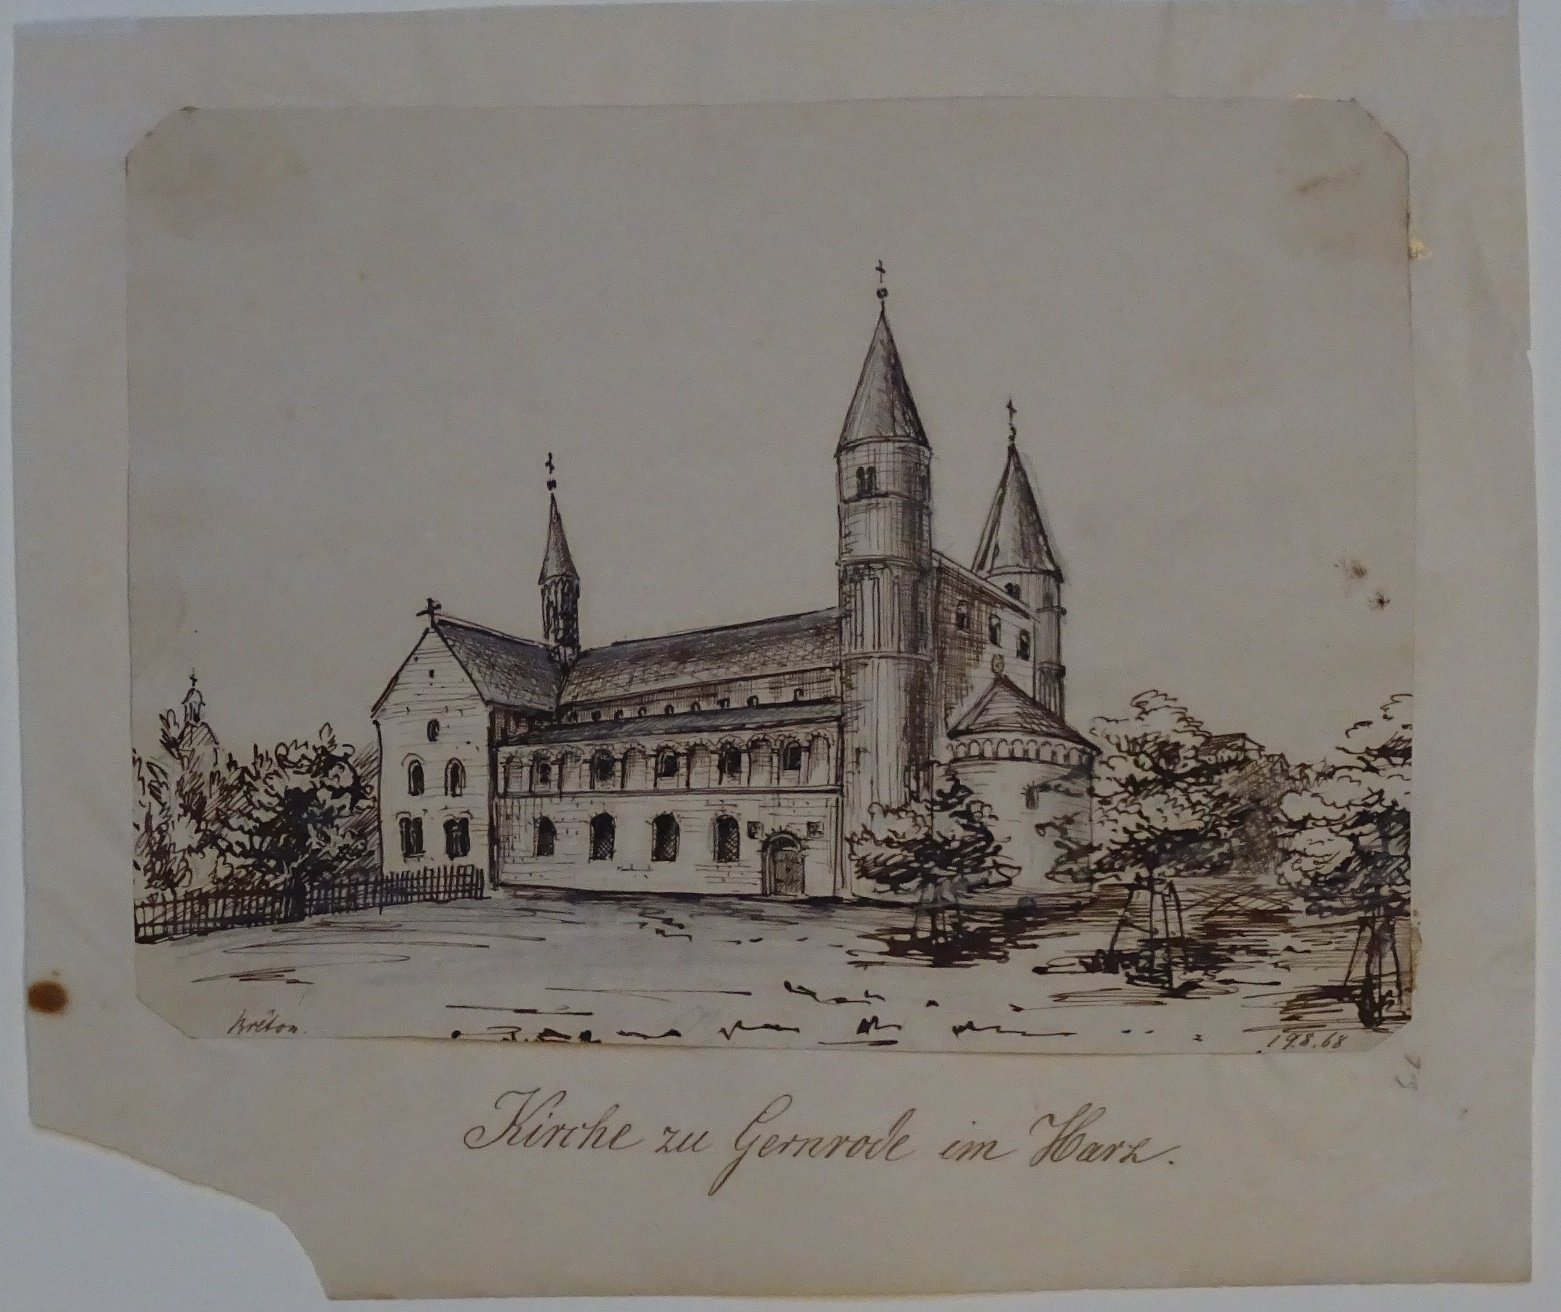 Gernrode: Stiftskirche, gezeichnet von Breton, 19. August 1868 (Schloß Wernigerode GmbH RR-F)